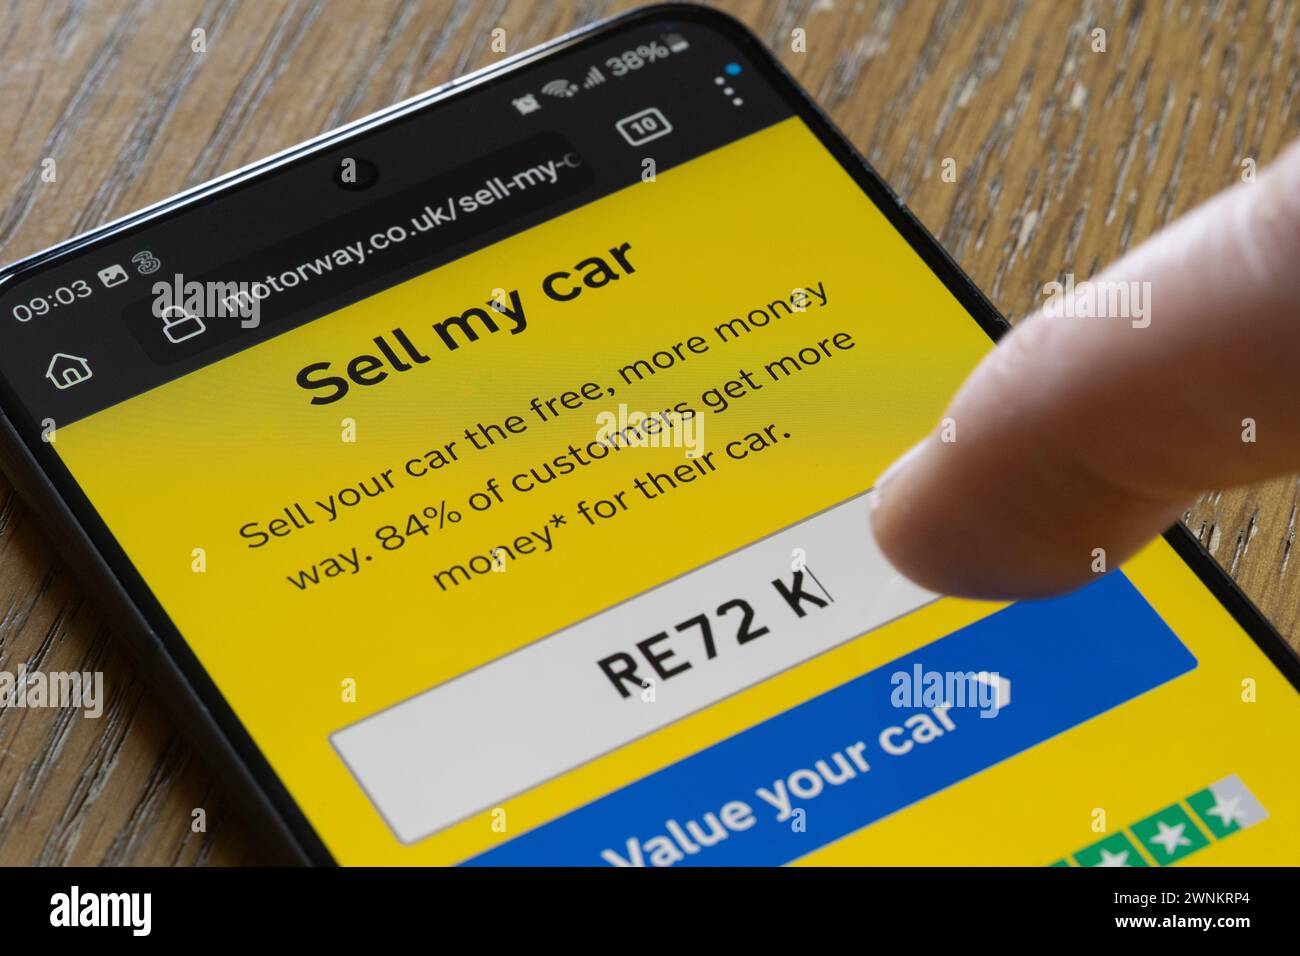 Un homme saisissant son numéro d'immatriculation de voiture dans l'application de vente de voitures d'autoroute sur son smartphone, Royaume-Uni. L'écran affiche « vendre ma voiture » et comporte un bouton de devis Banque D'Images